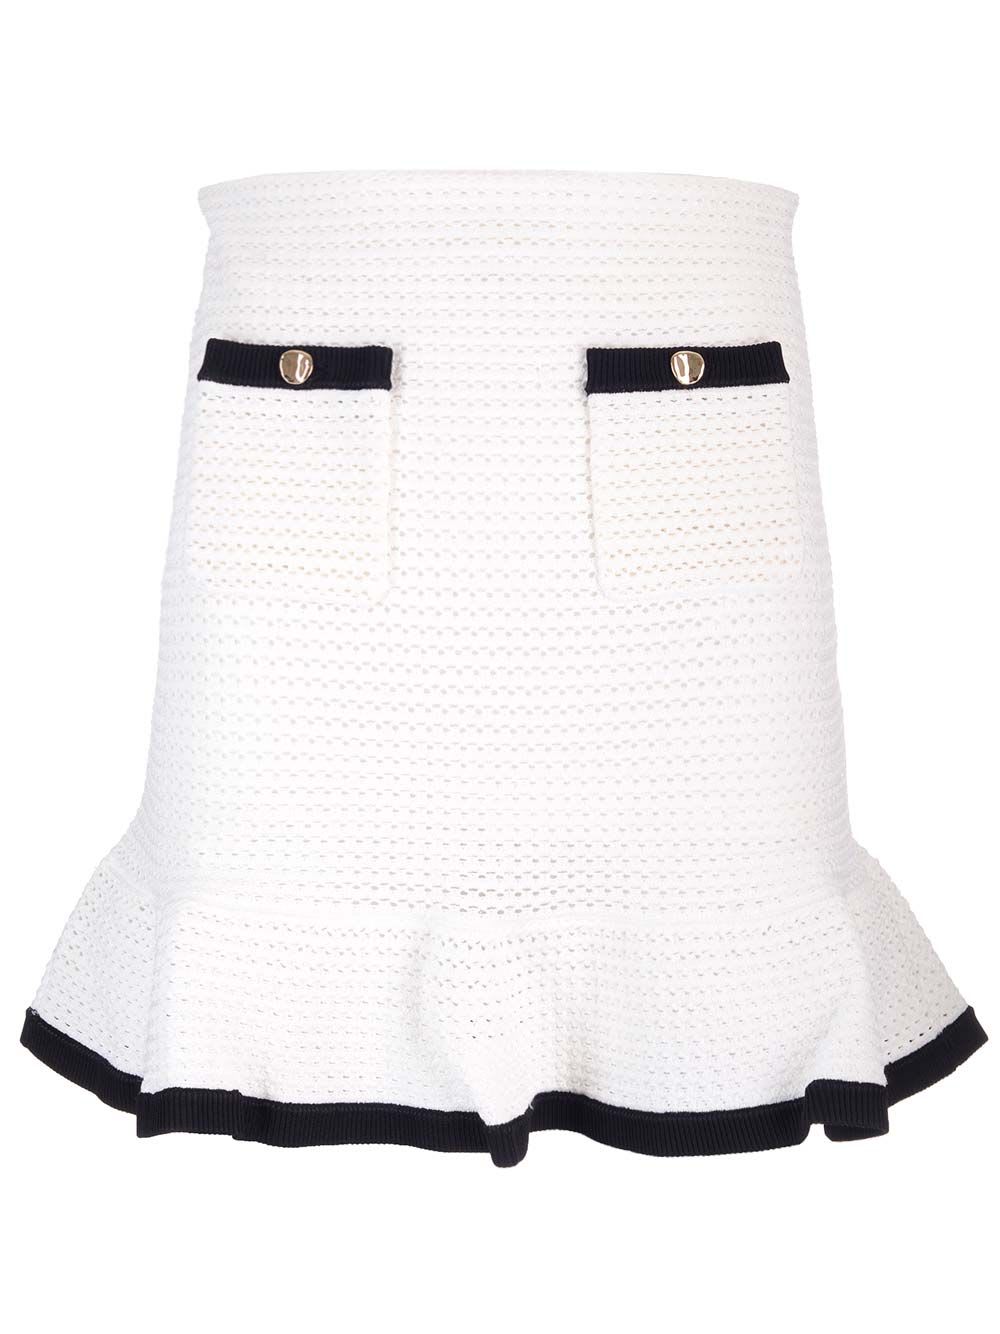 White Crochet Skirt